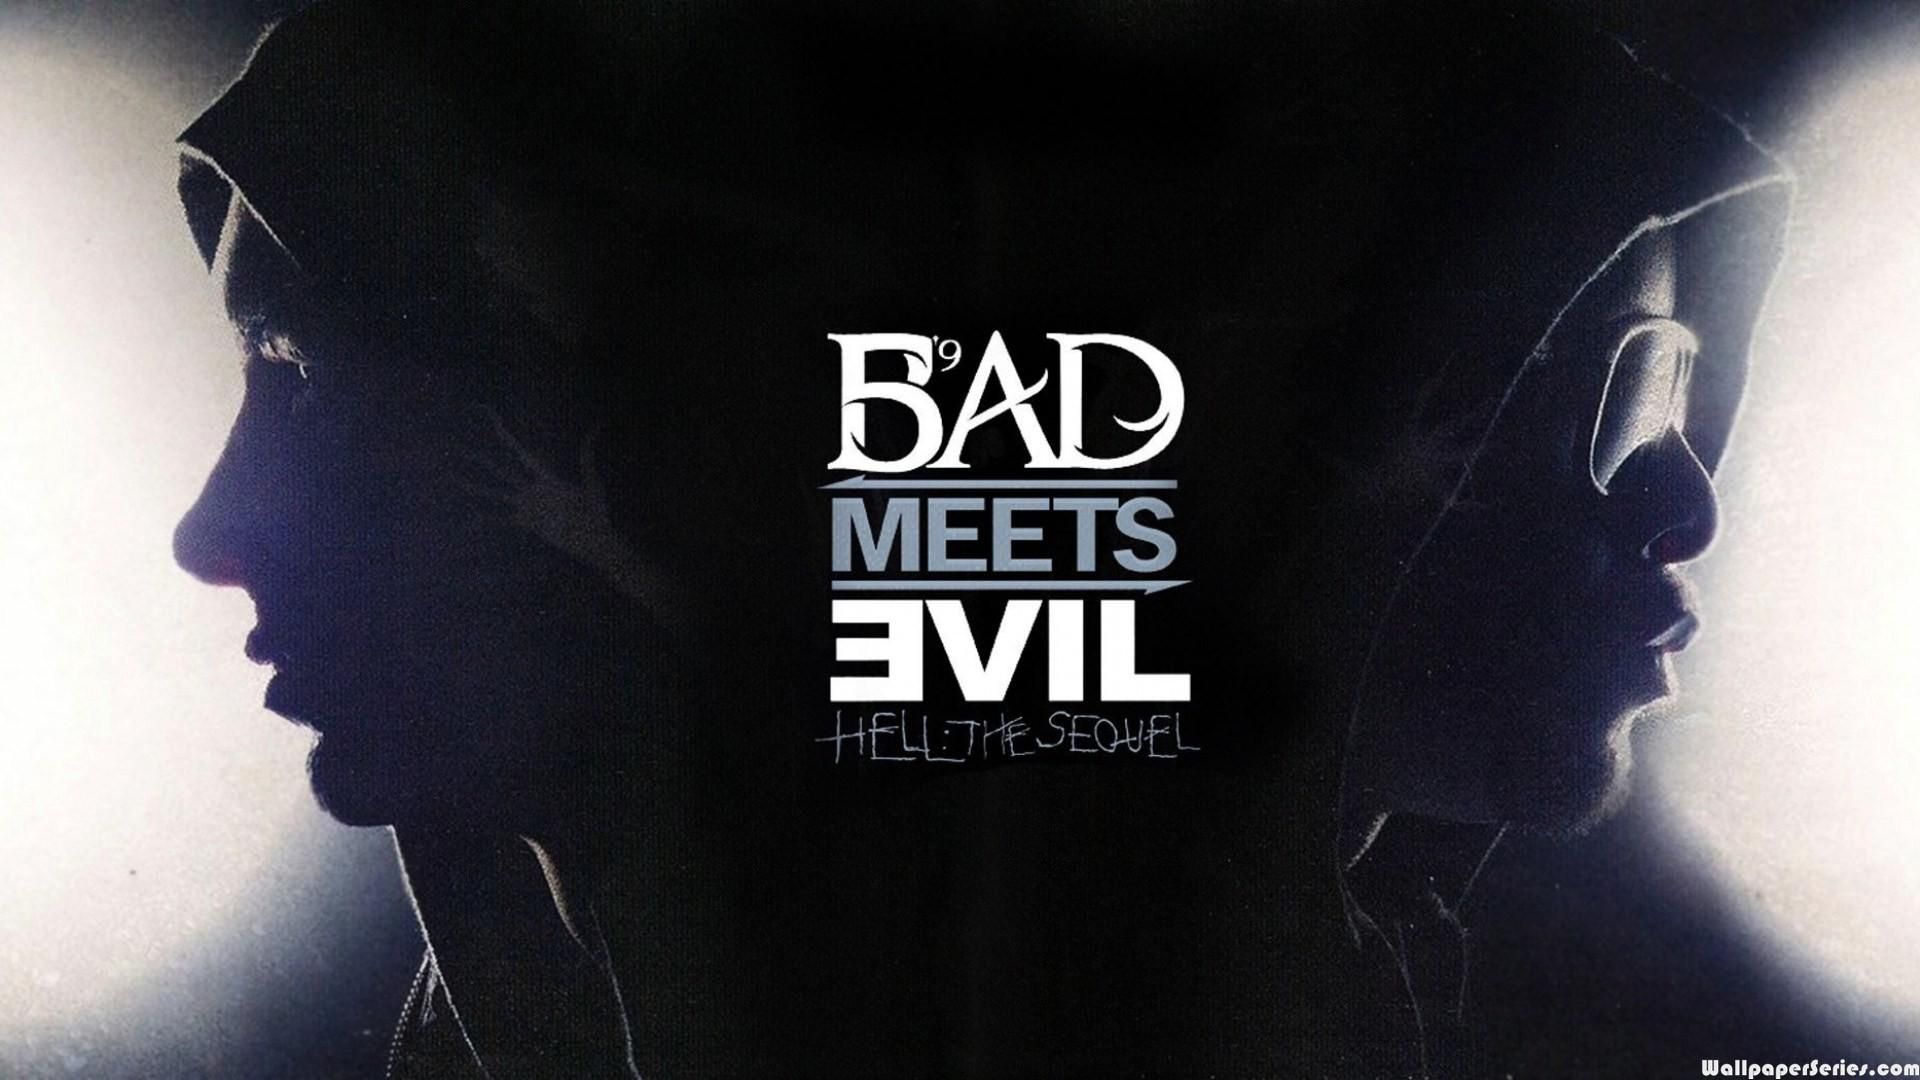 Hd Eminem Bad Meets Evil HD Wallpaper Meets Evil Hell The Sequel Album